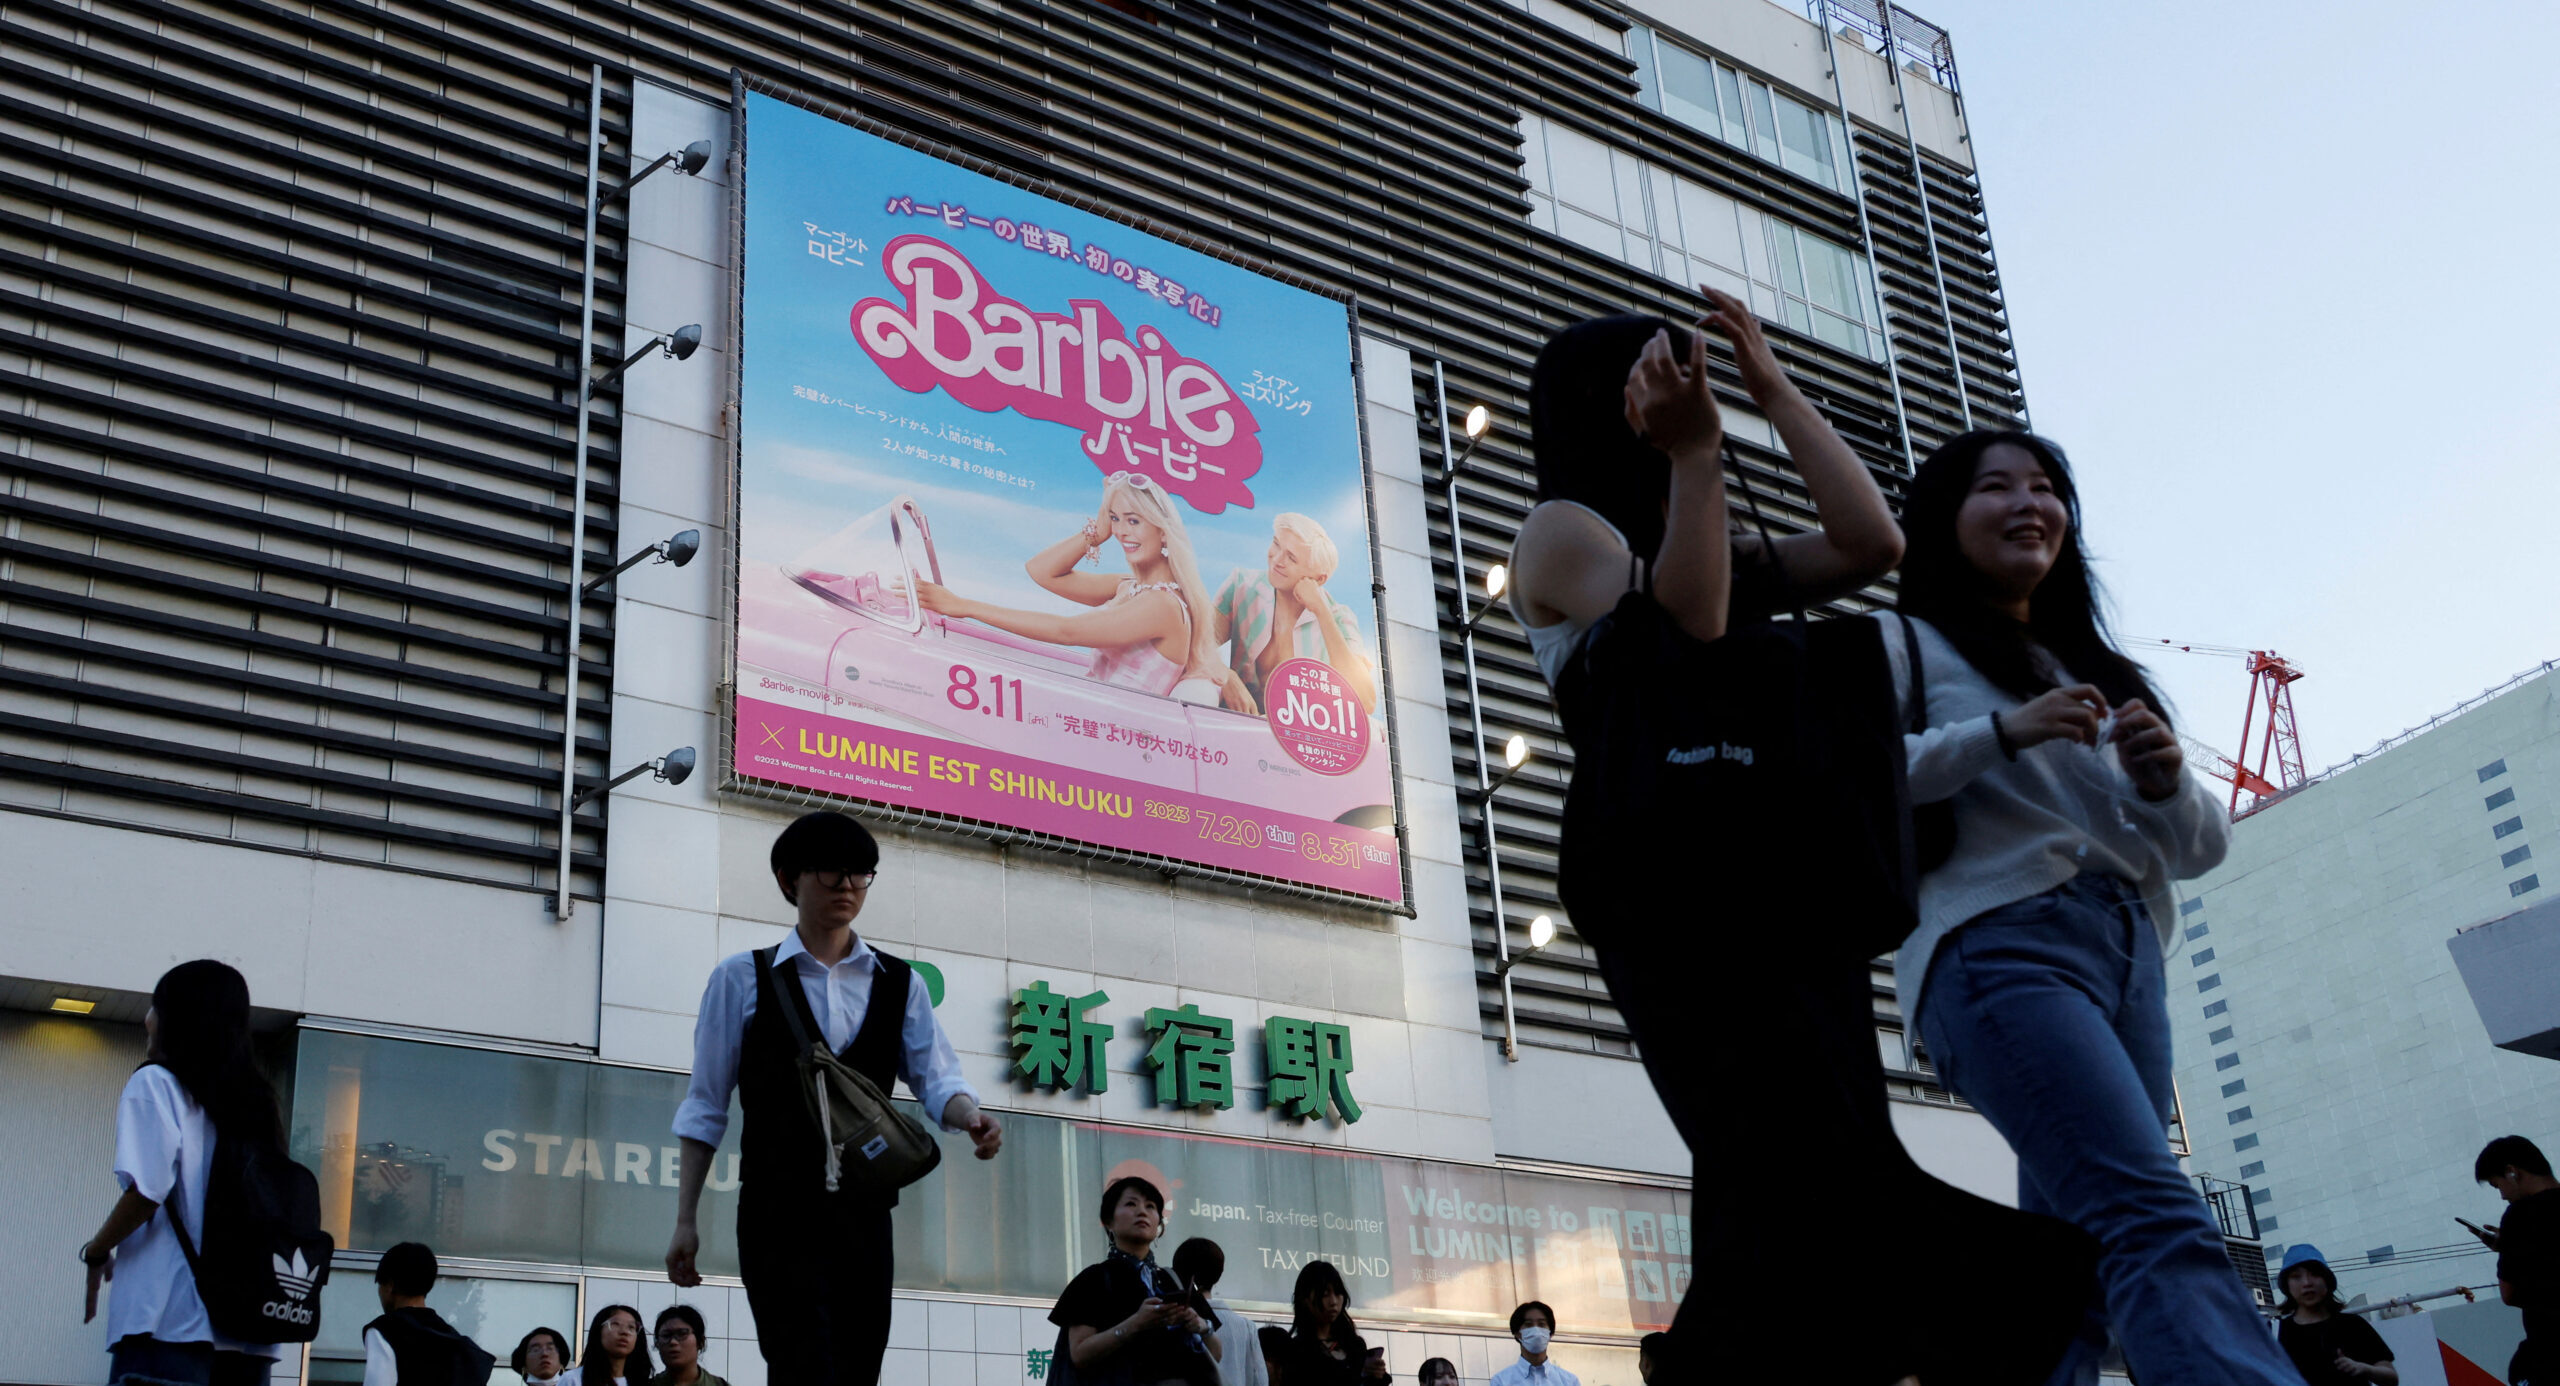 Barbie movie in Japan